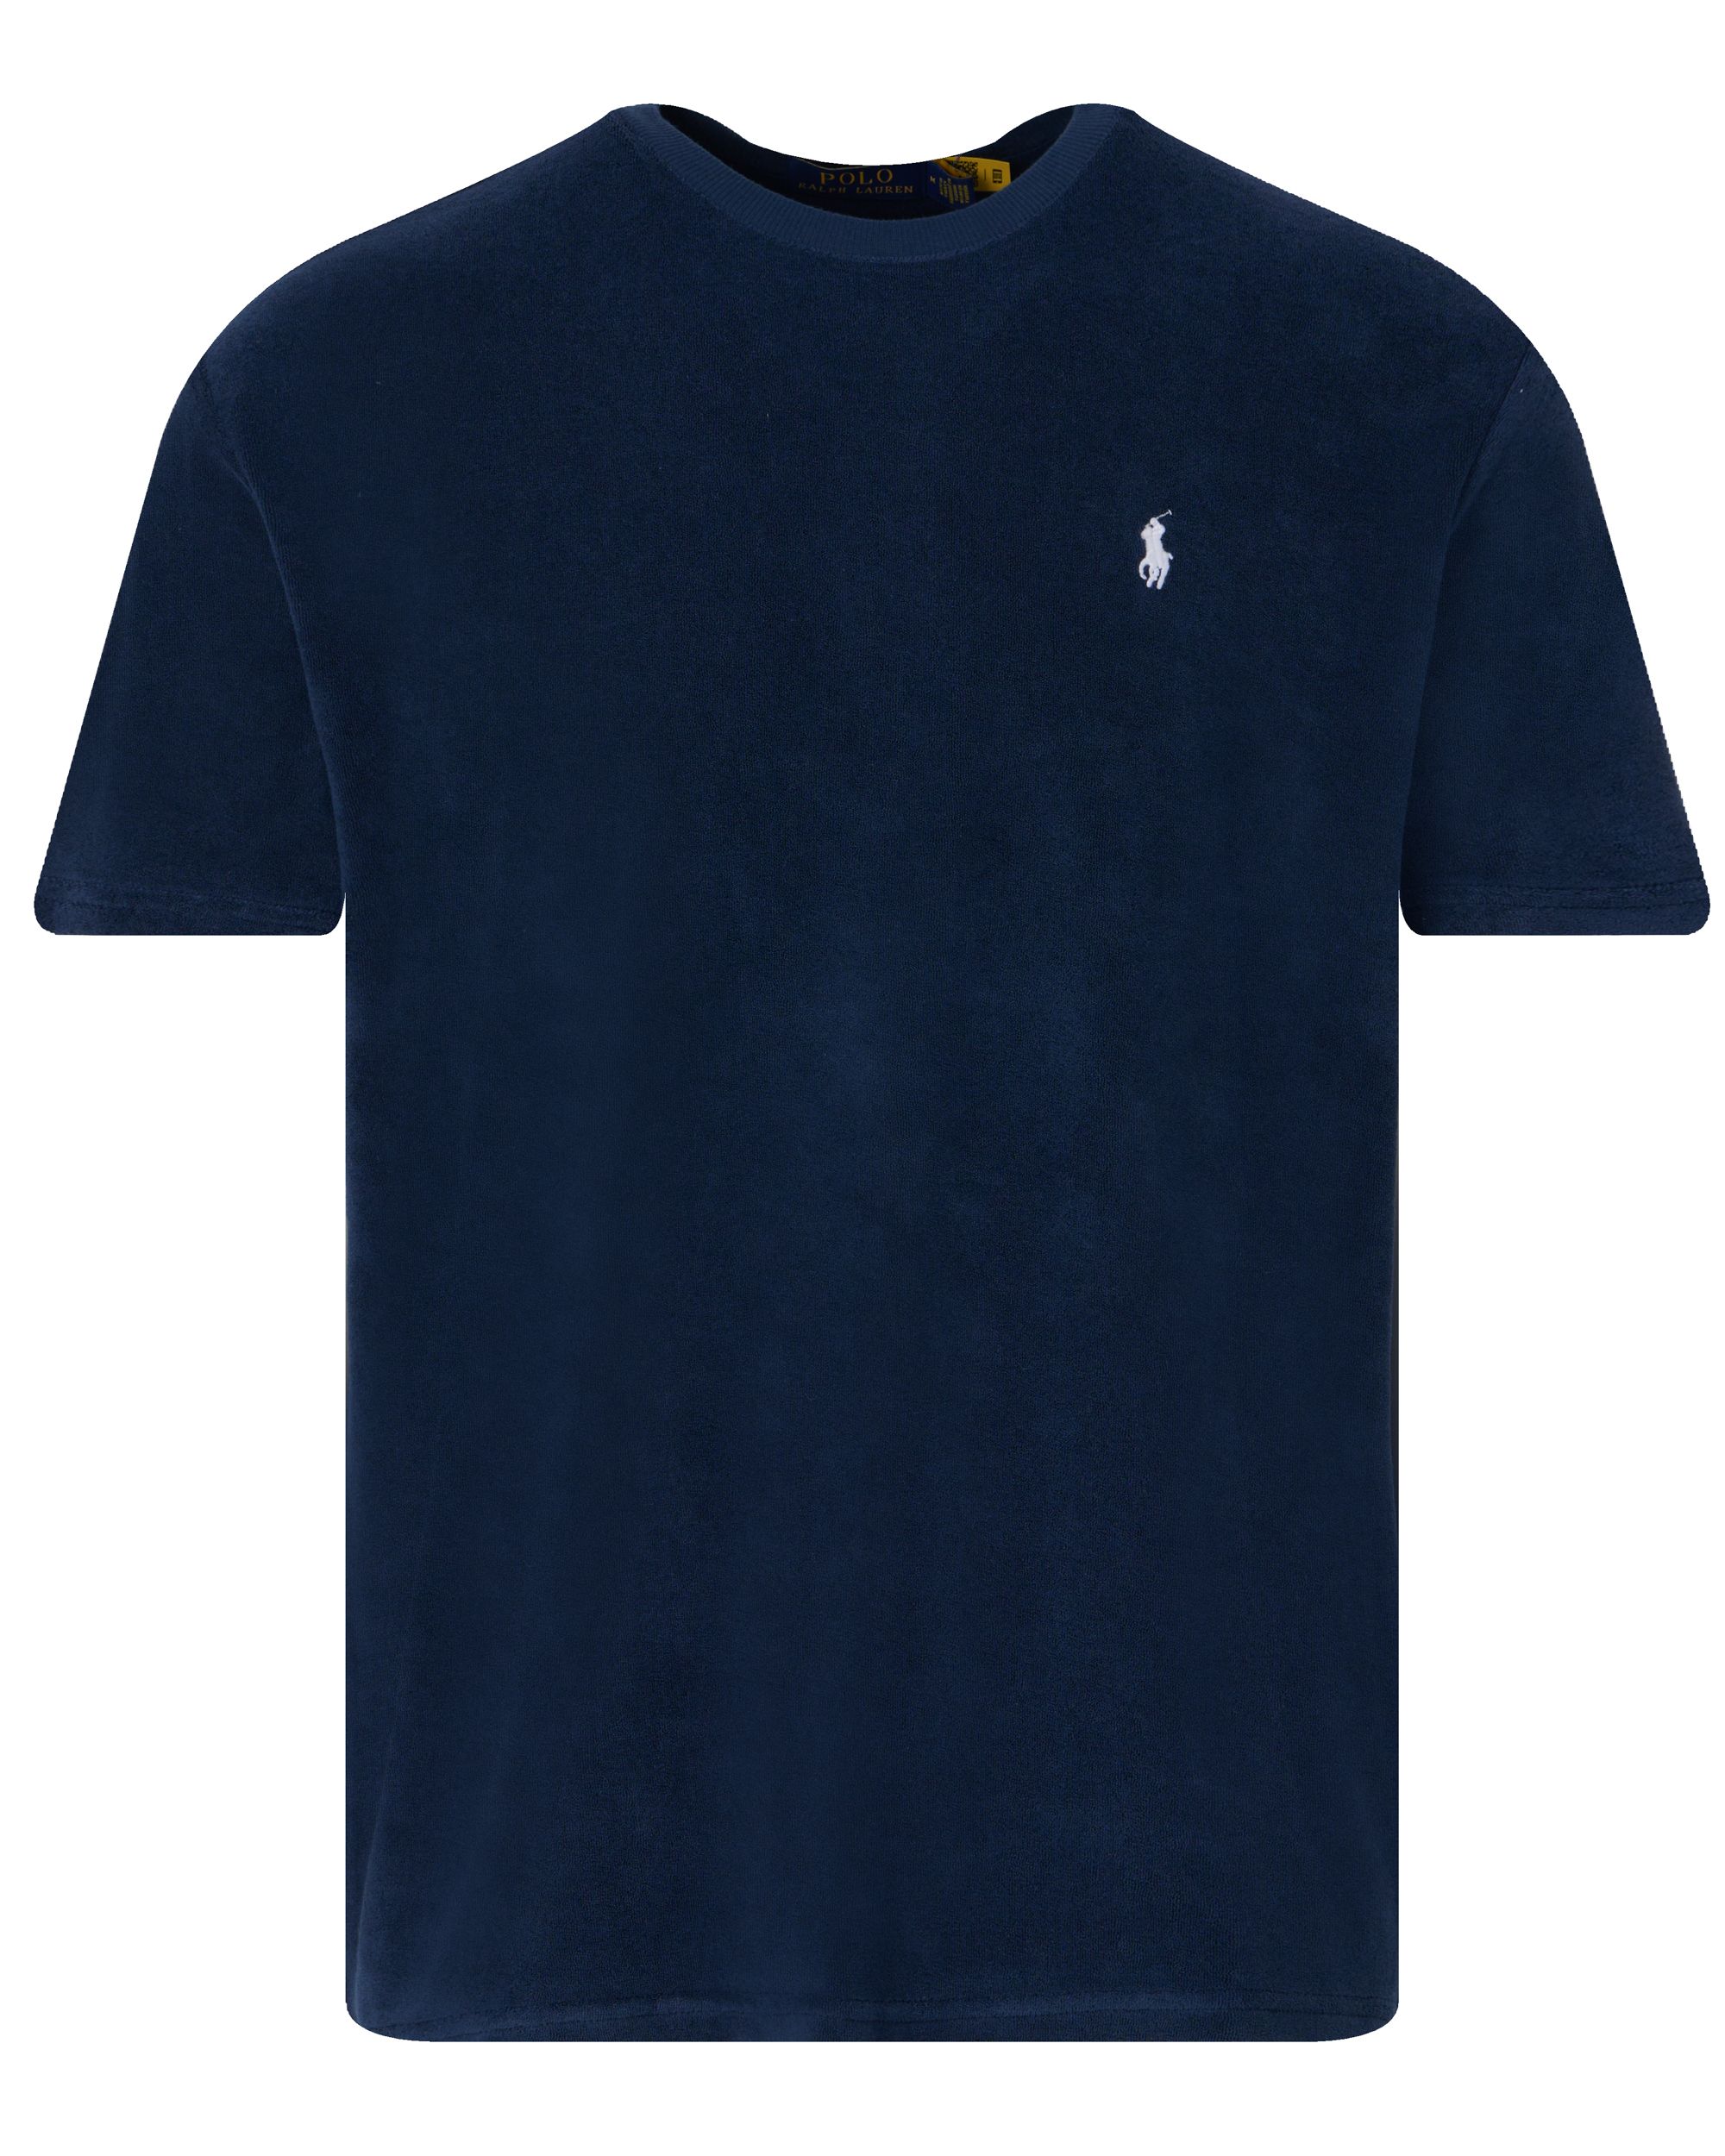 Polo Ralph Lauren T-shirt KM Donker blauw 095293-001-L